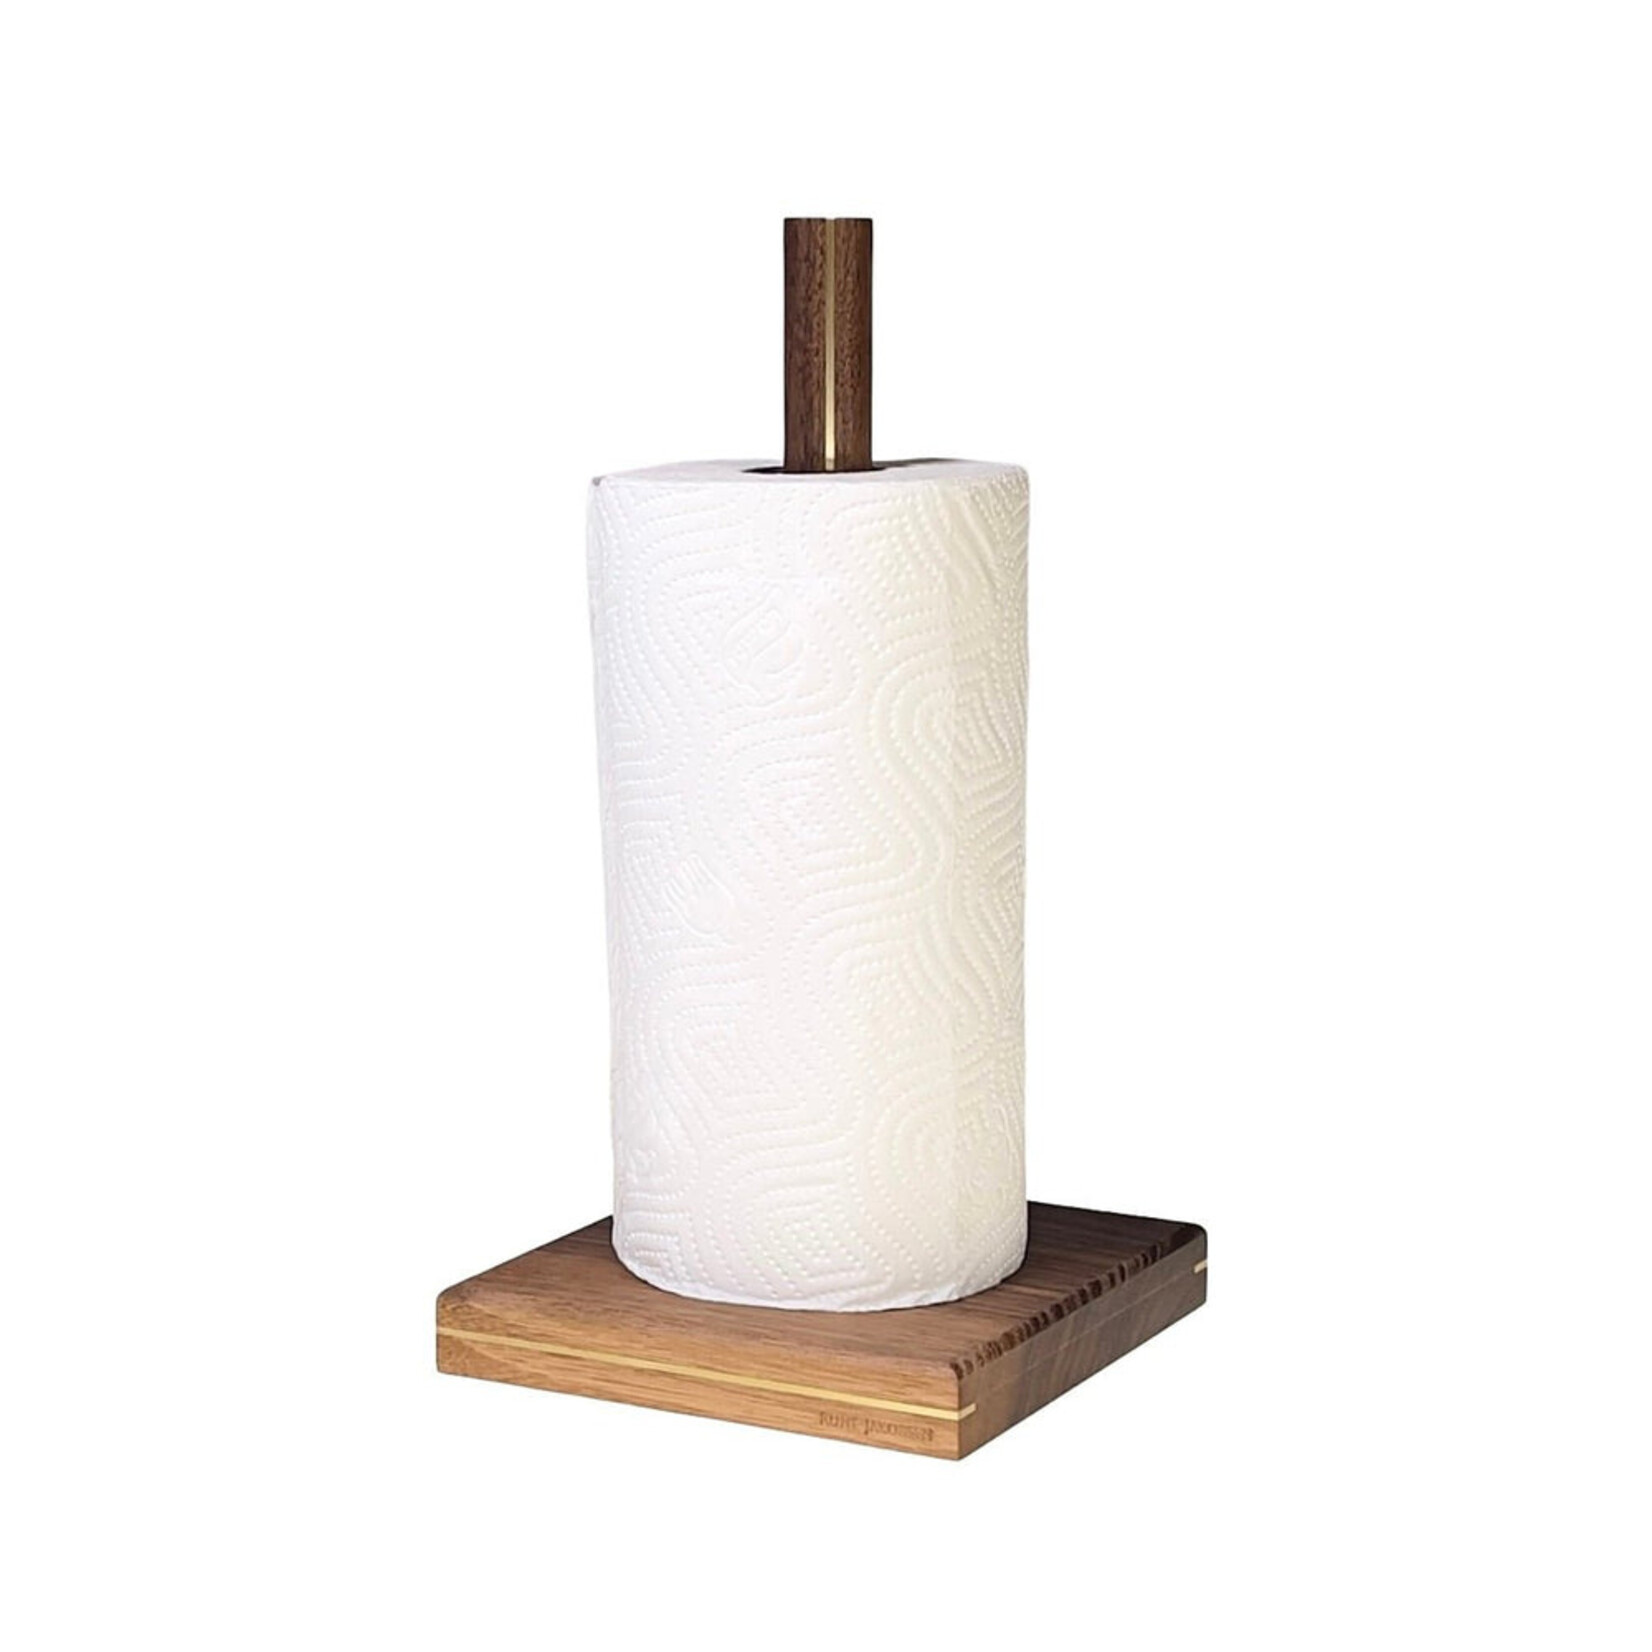 Rune-Jakobsen Paper Towel Holders